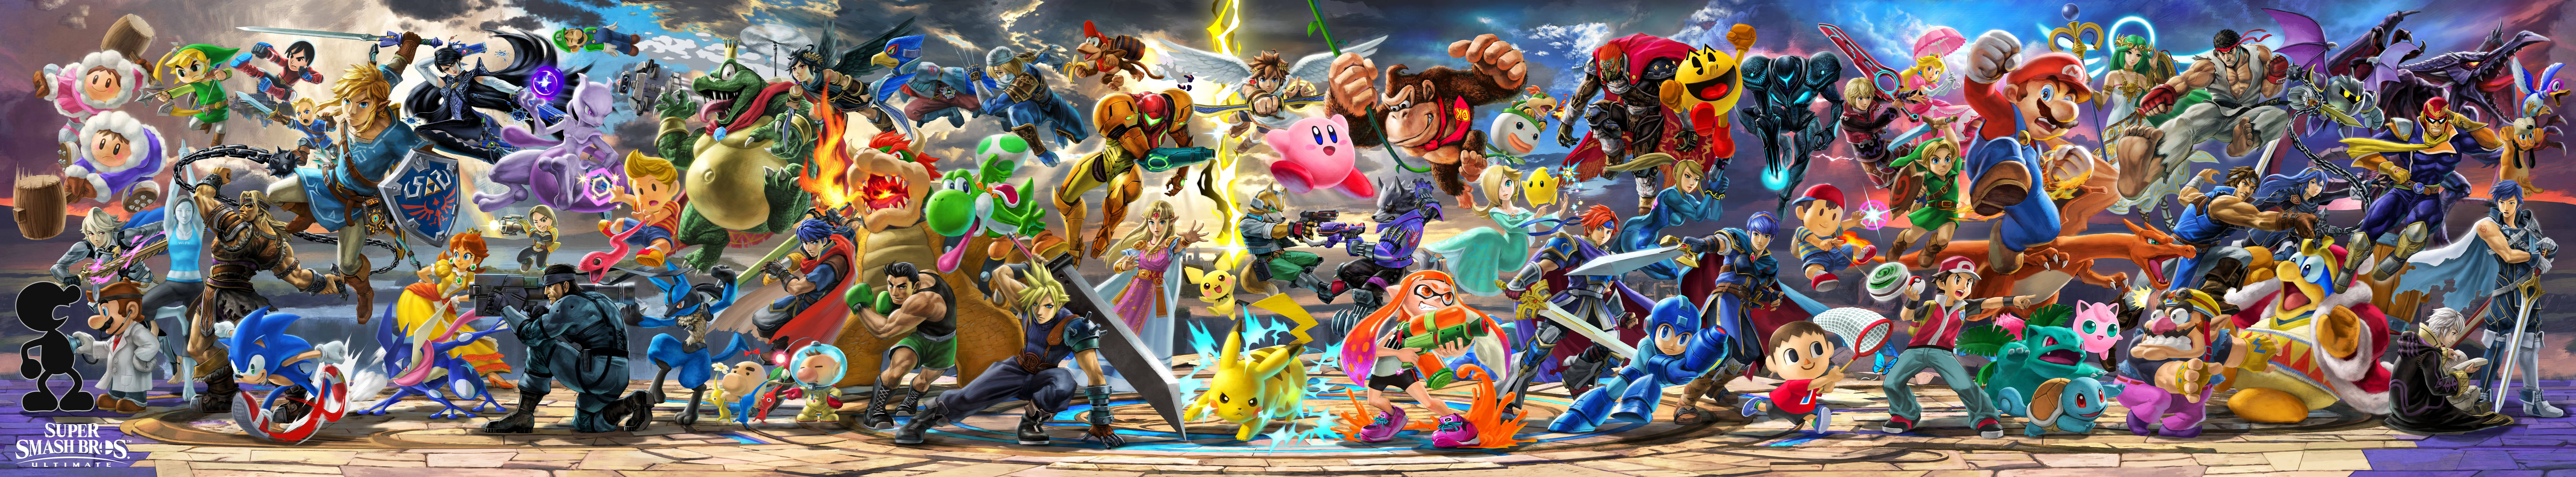 Super Smash Bros Ultimate Wide Banner Wallpaper